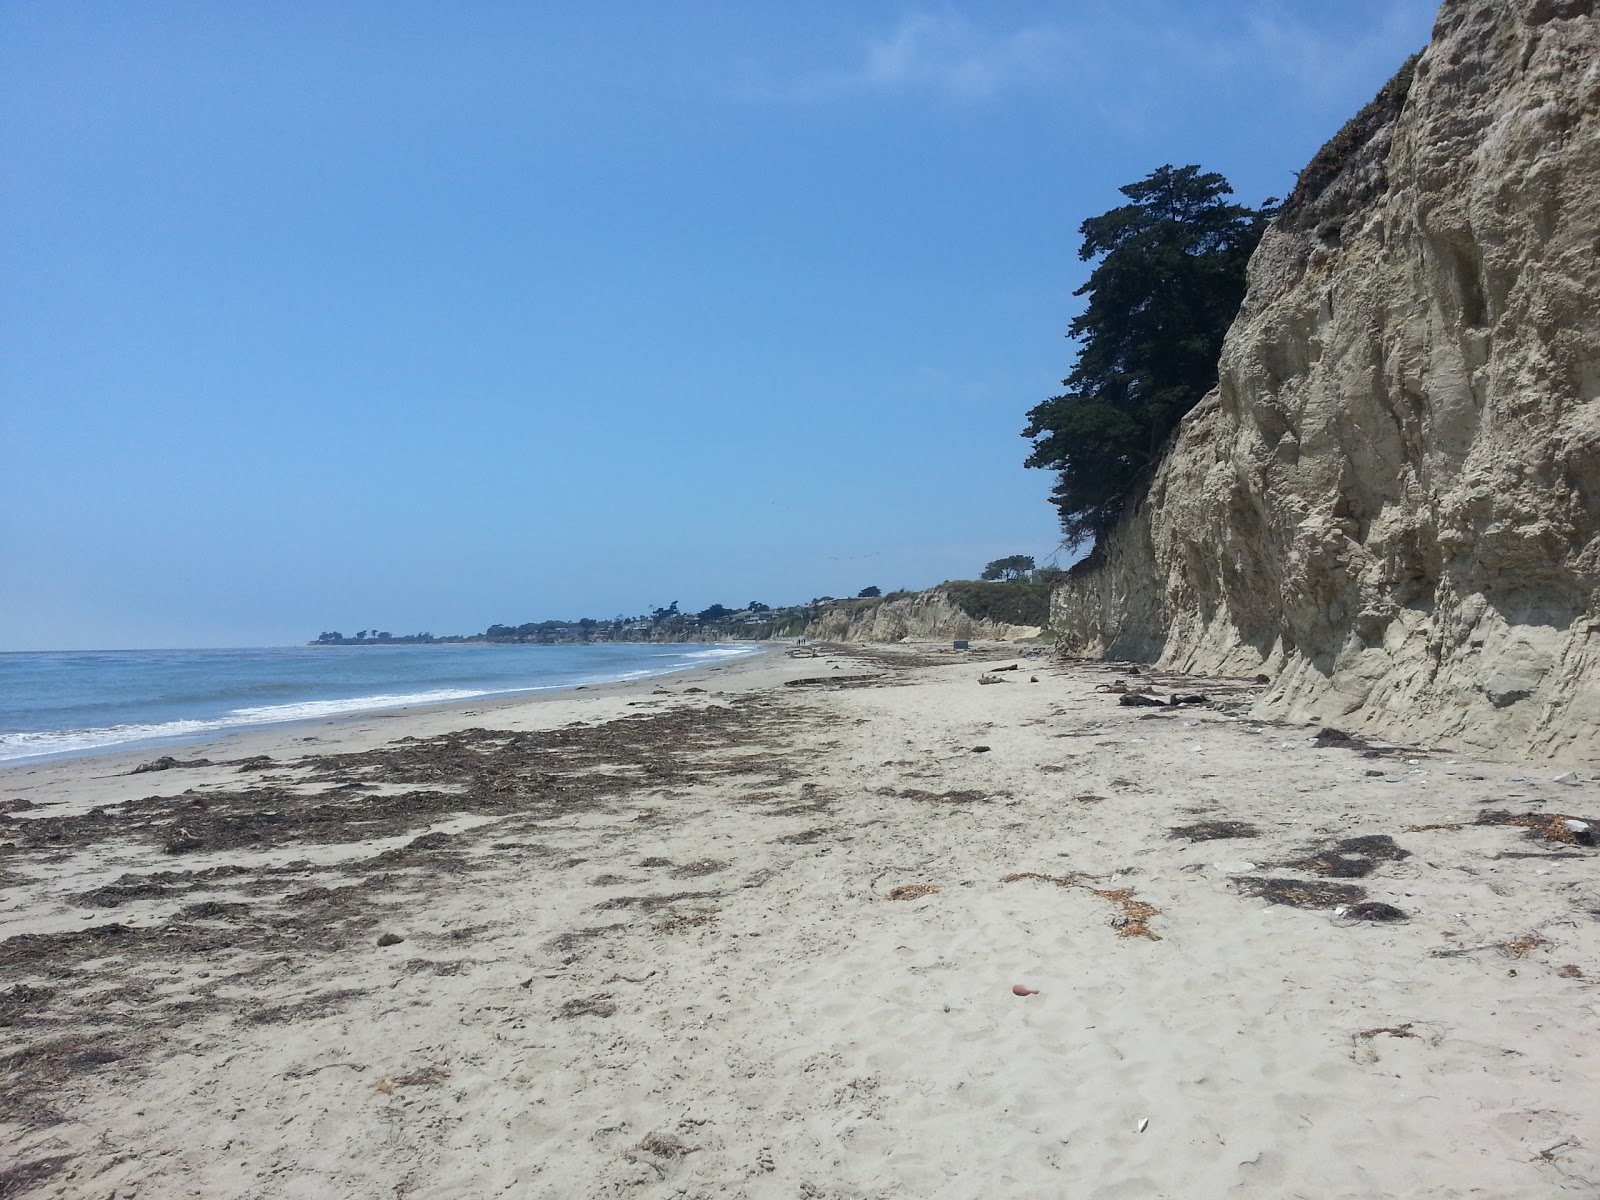 Fotografie cu Depressions Beach IVKC cu o suprafață de nisip strălucitor